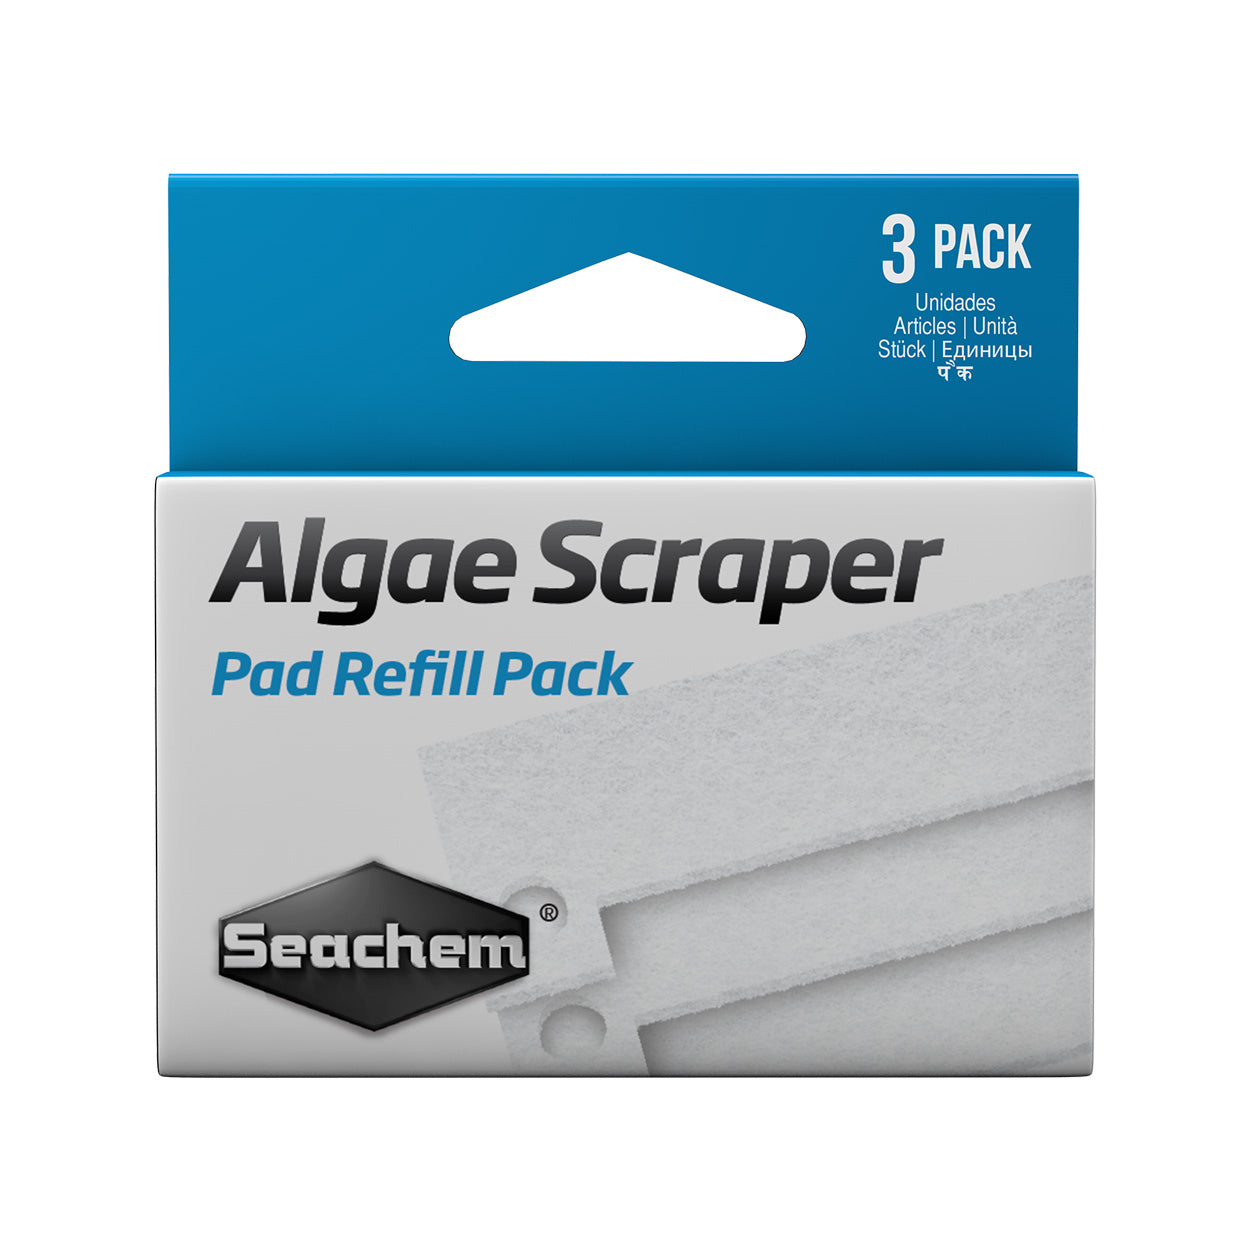 Seachem Algae Scraper Pad Refill Pack - 3pk